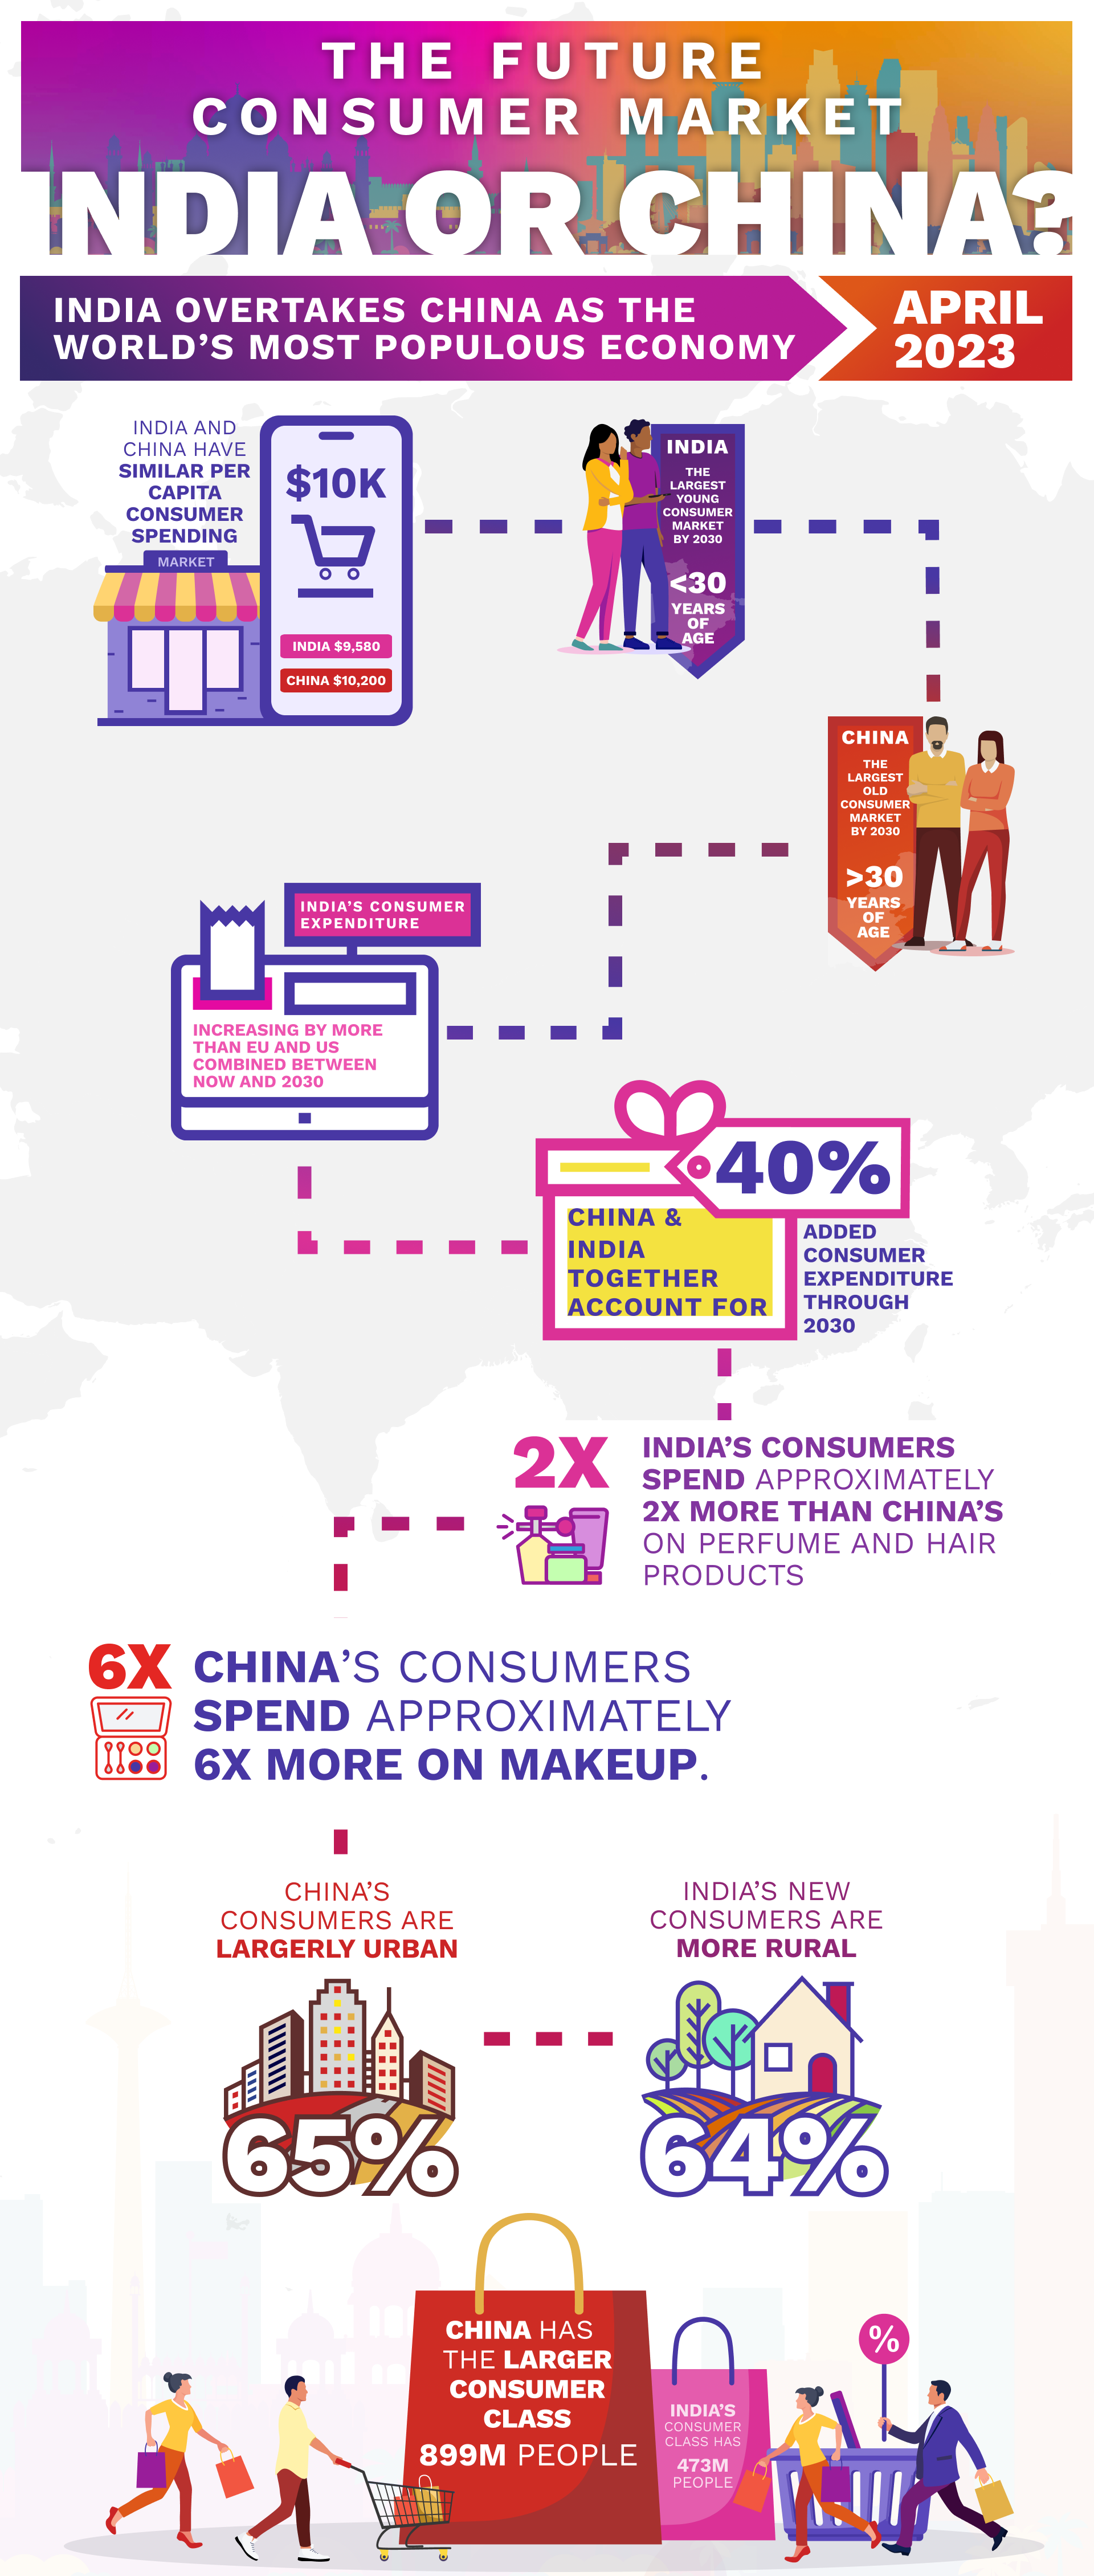 IndiaChina-infographic 3 (1)